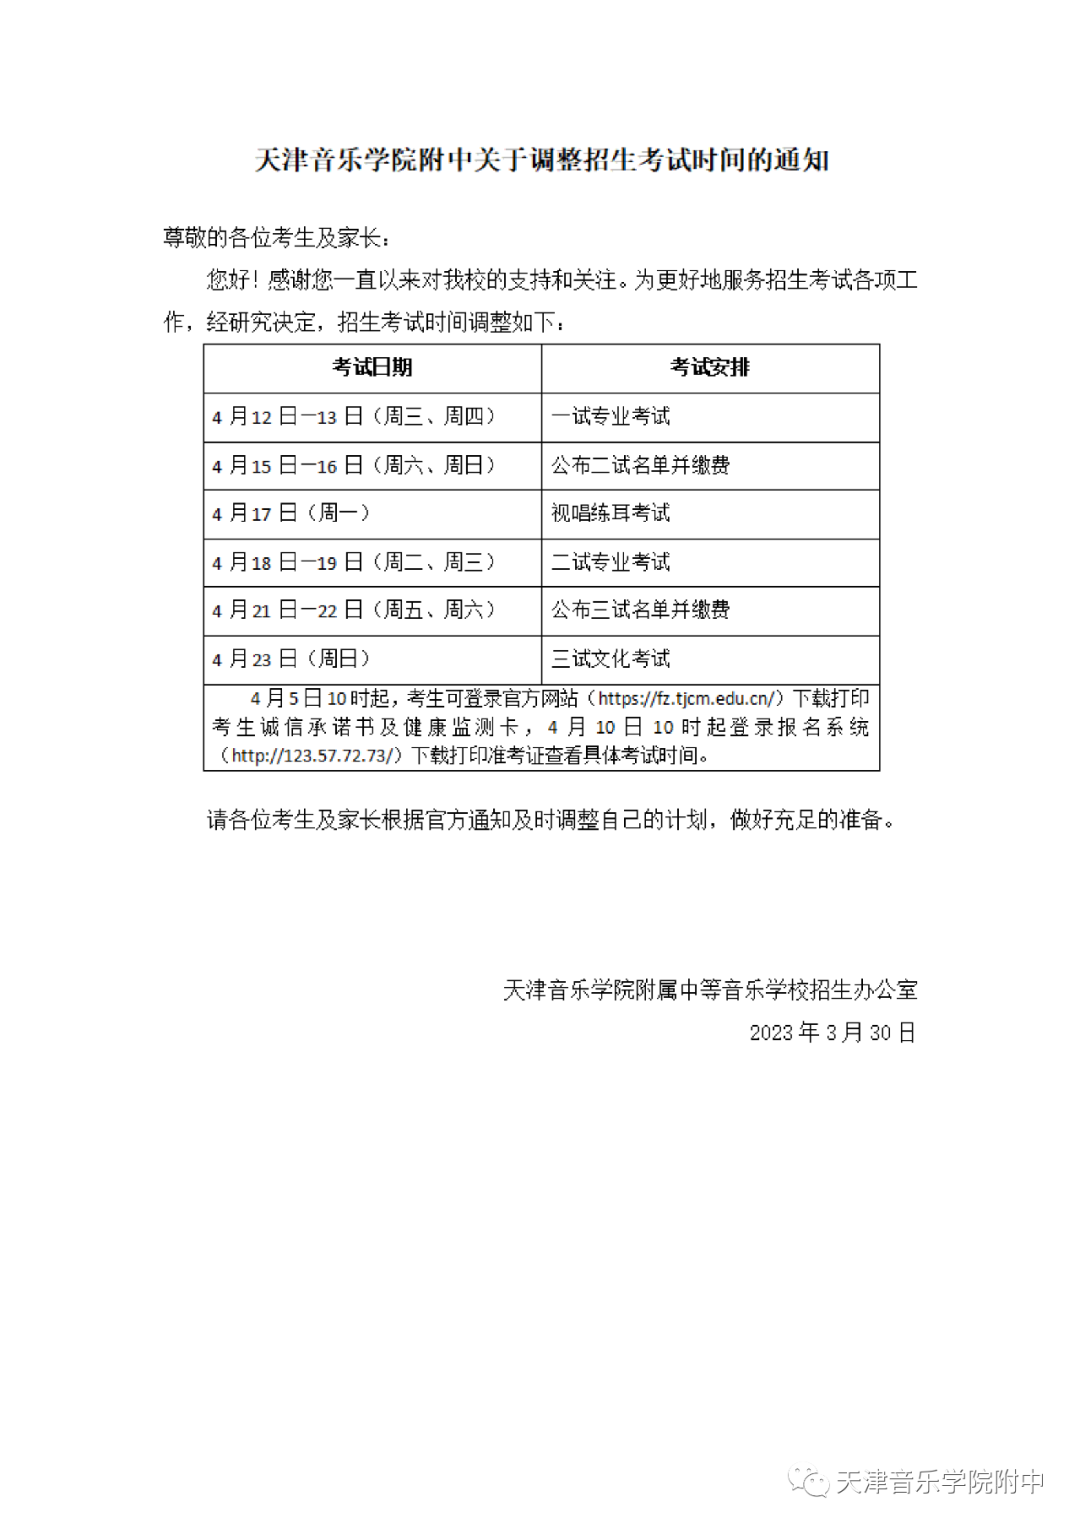 2023年天津音乐学院附中关于调整招生考试时间的通知